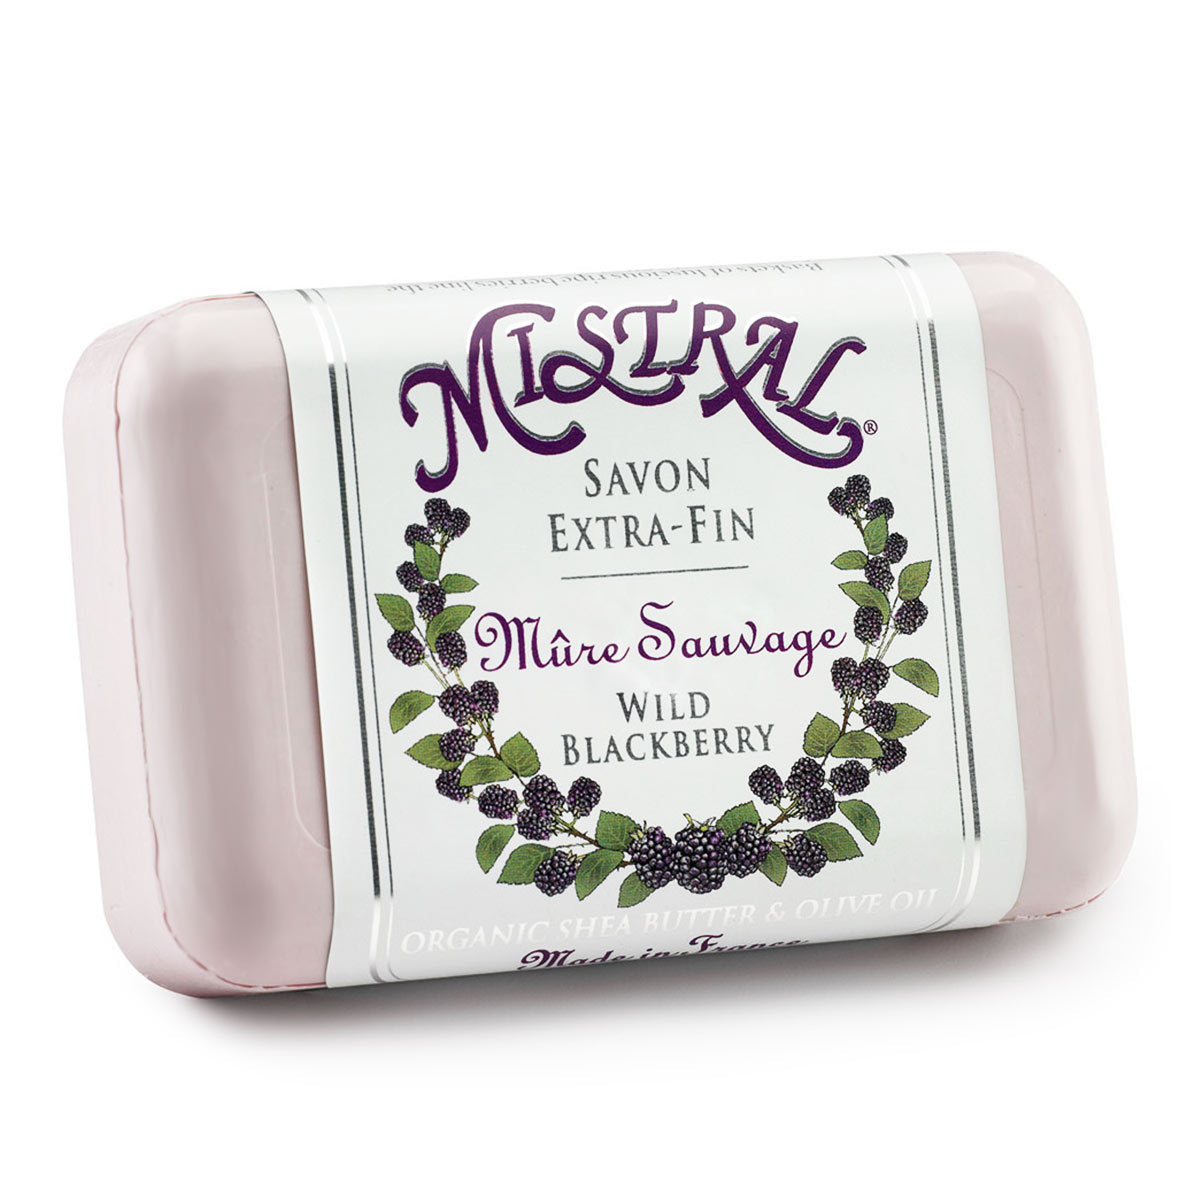 Primary image of Wild Blackberry Soap